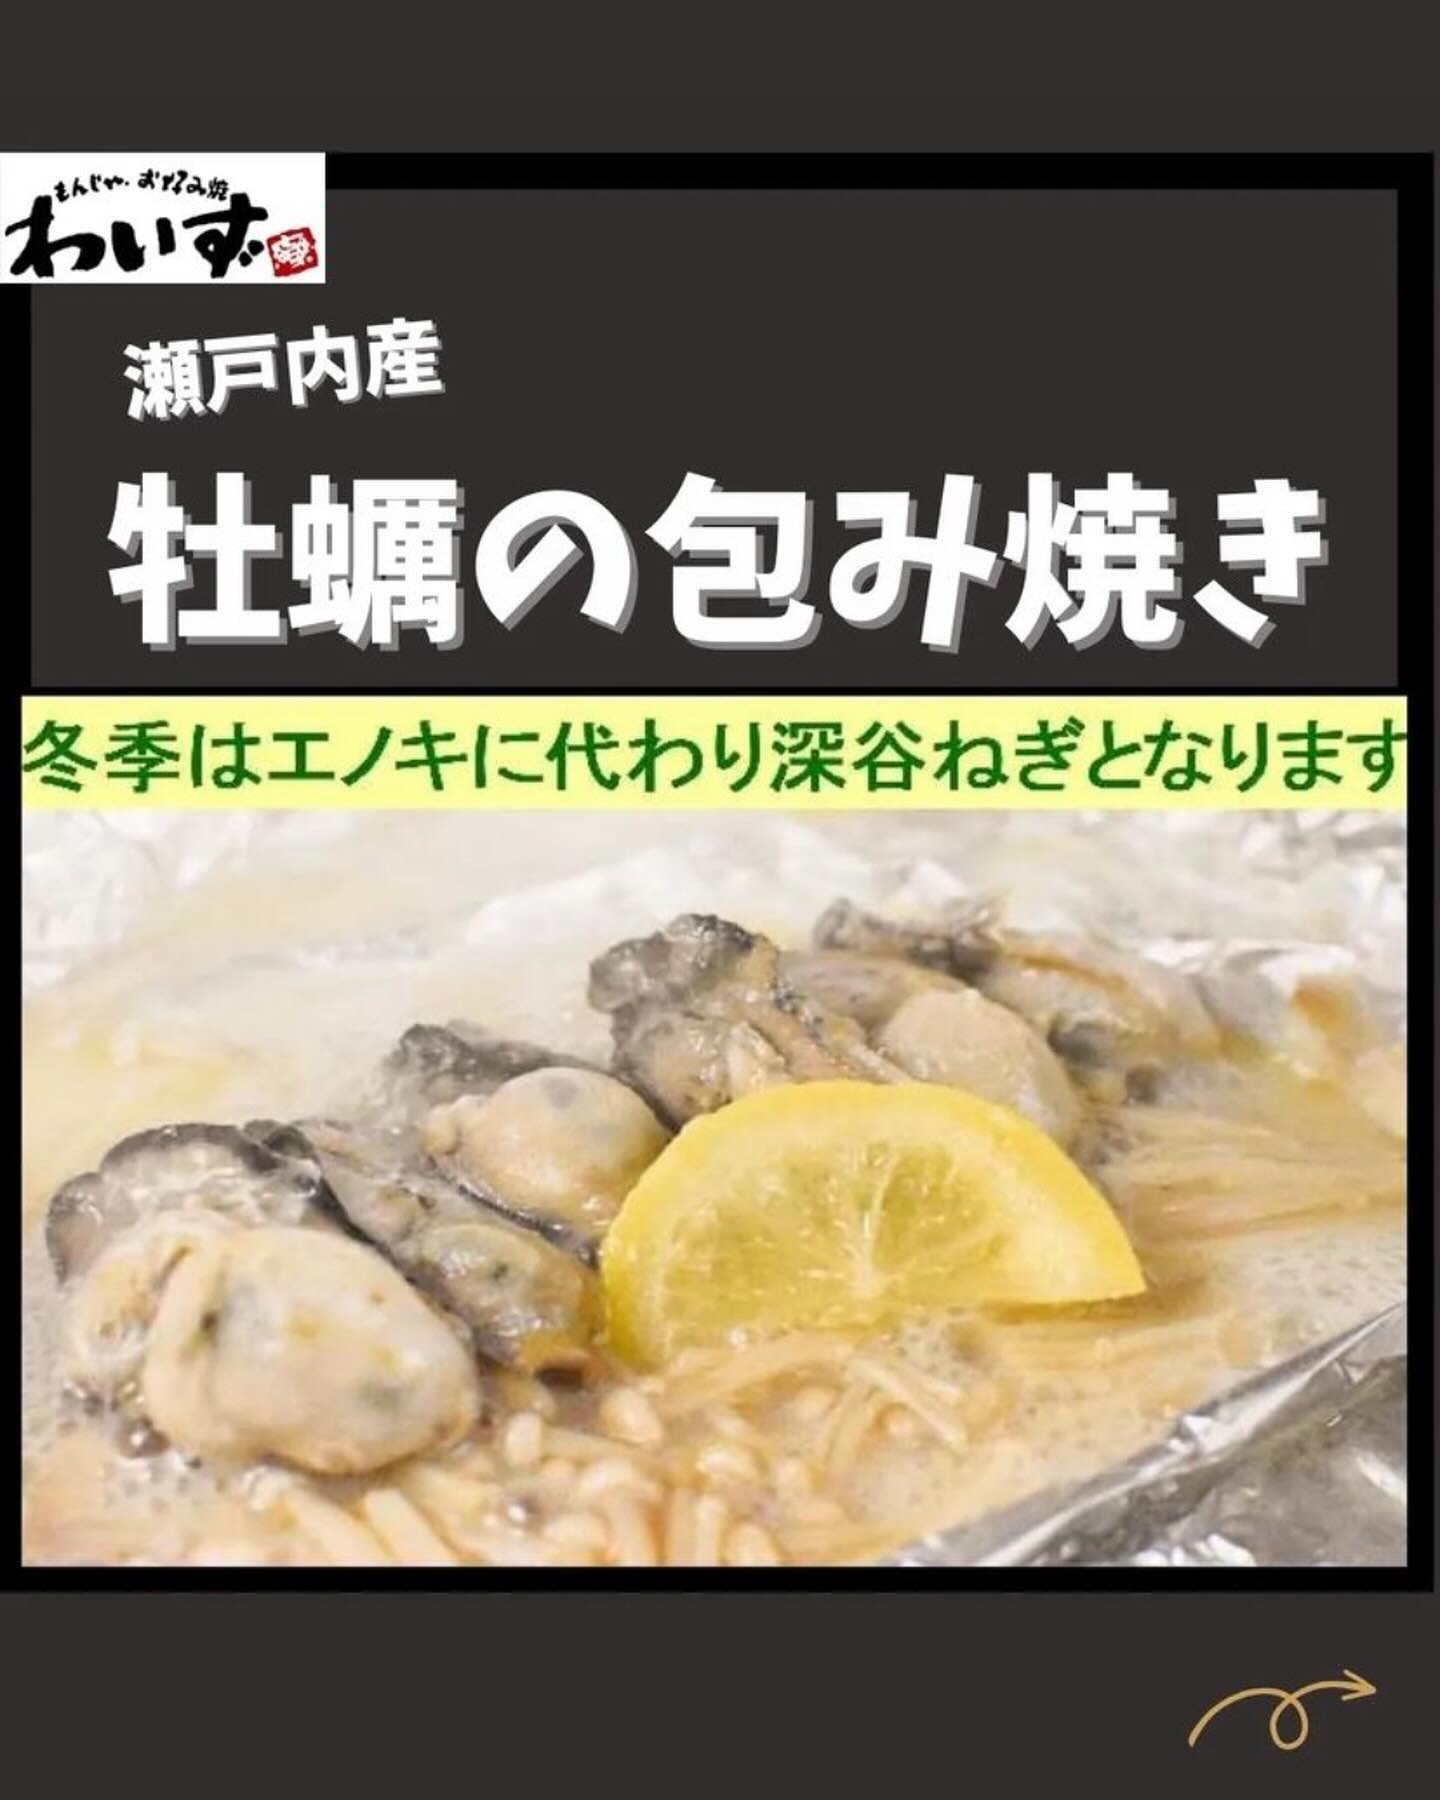 ◆牡蠣の包み焼◆もんじゃ・お好み焼きわいず